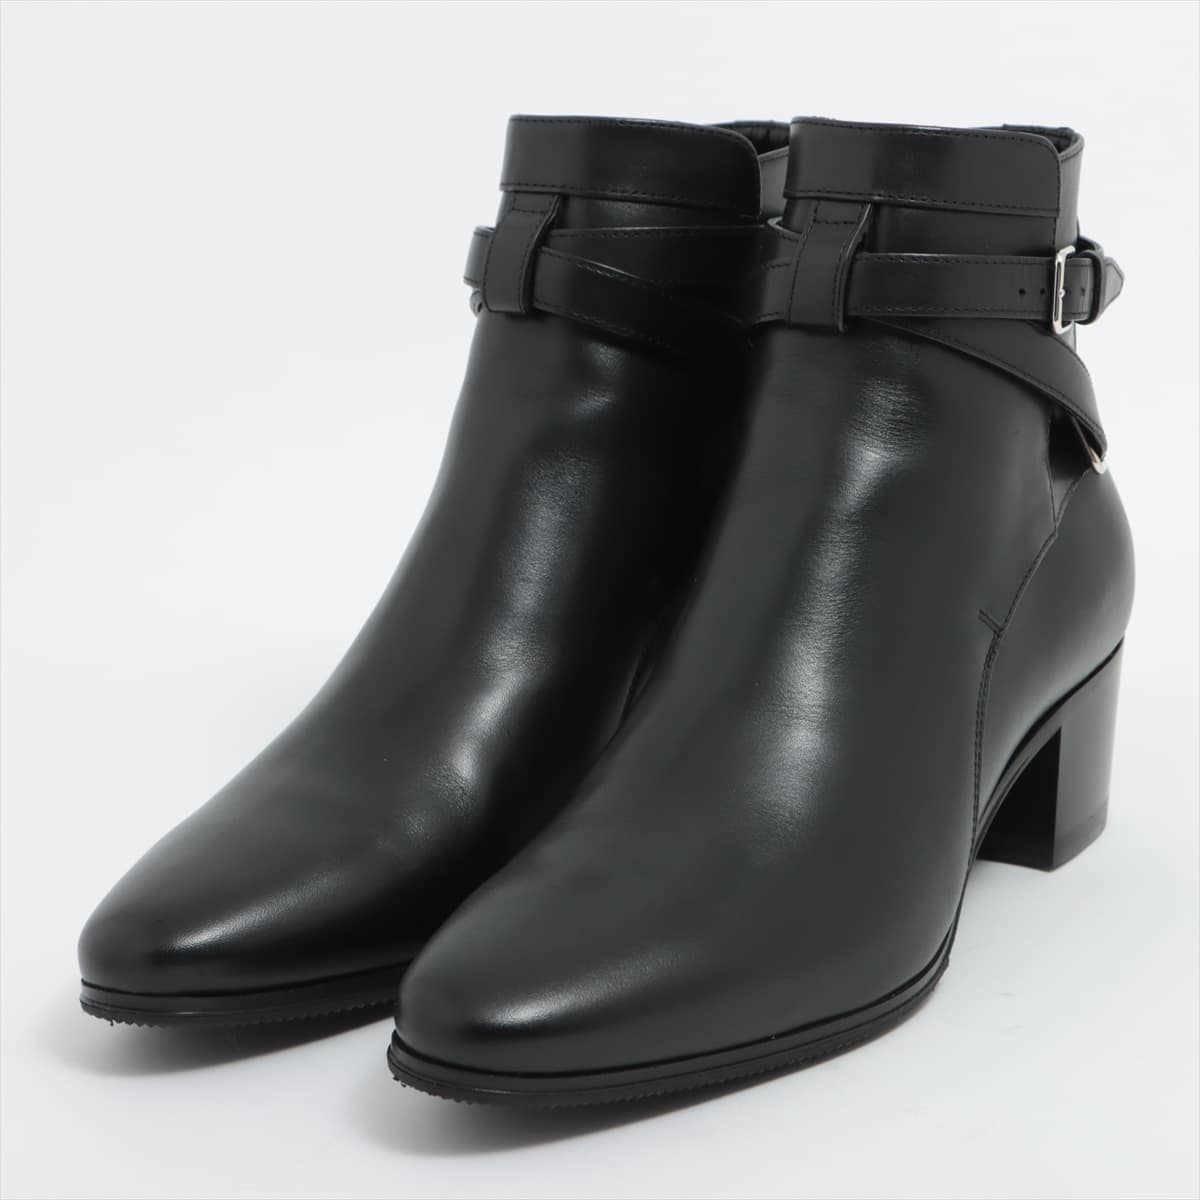 Saint Laurent Paris Leather Boots 38 Men's Black low heels Belt